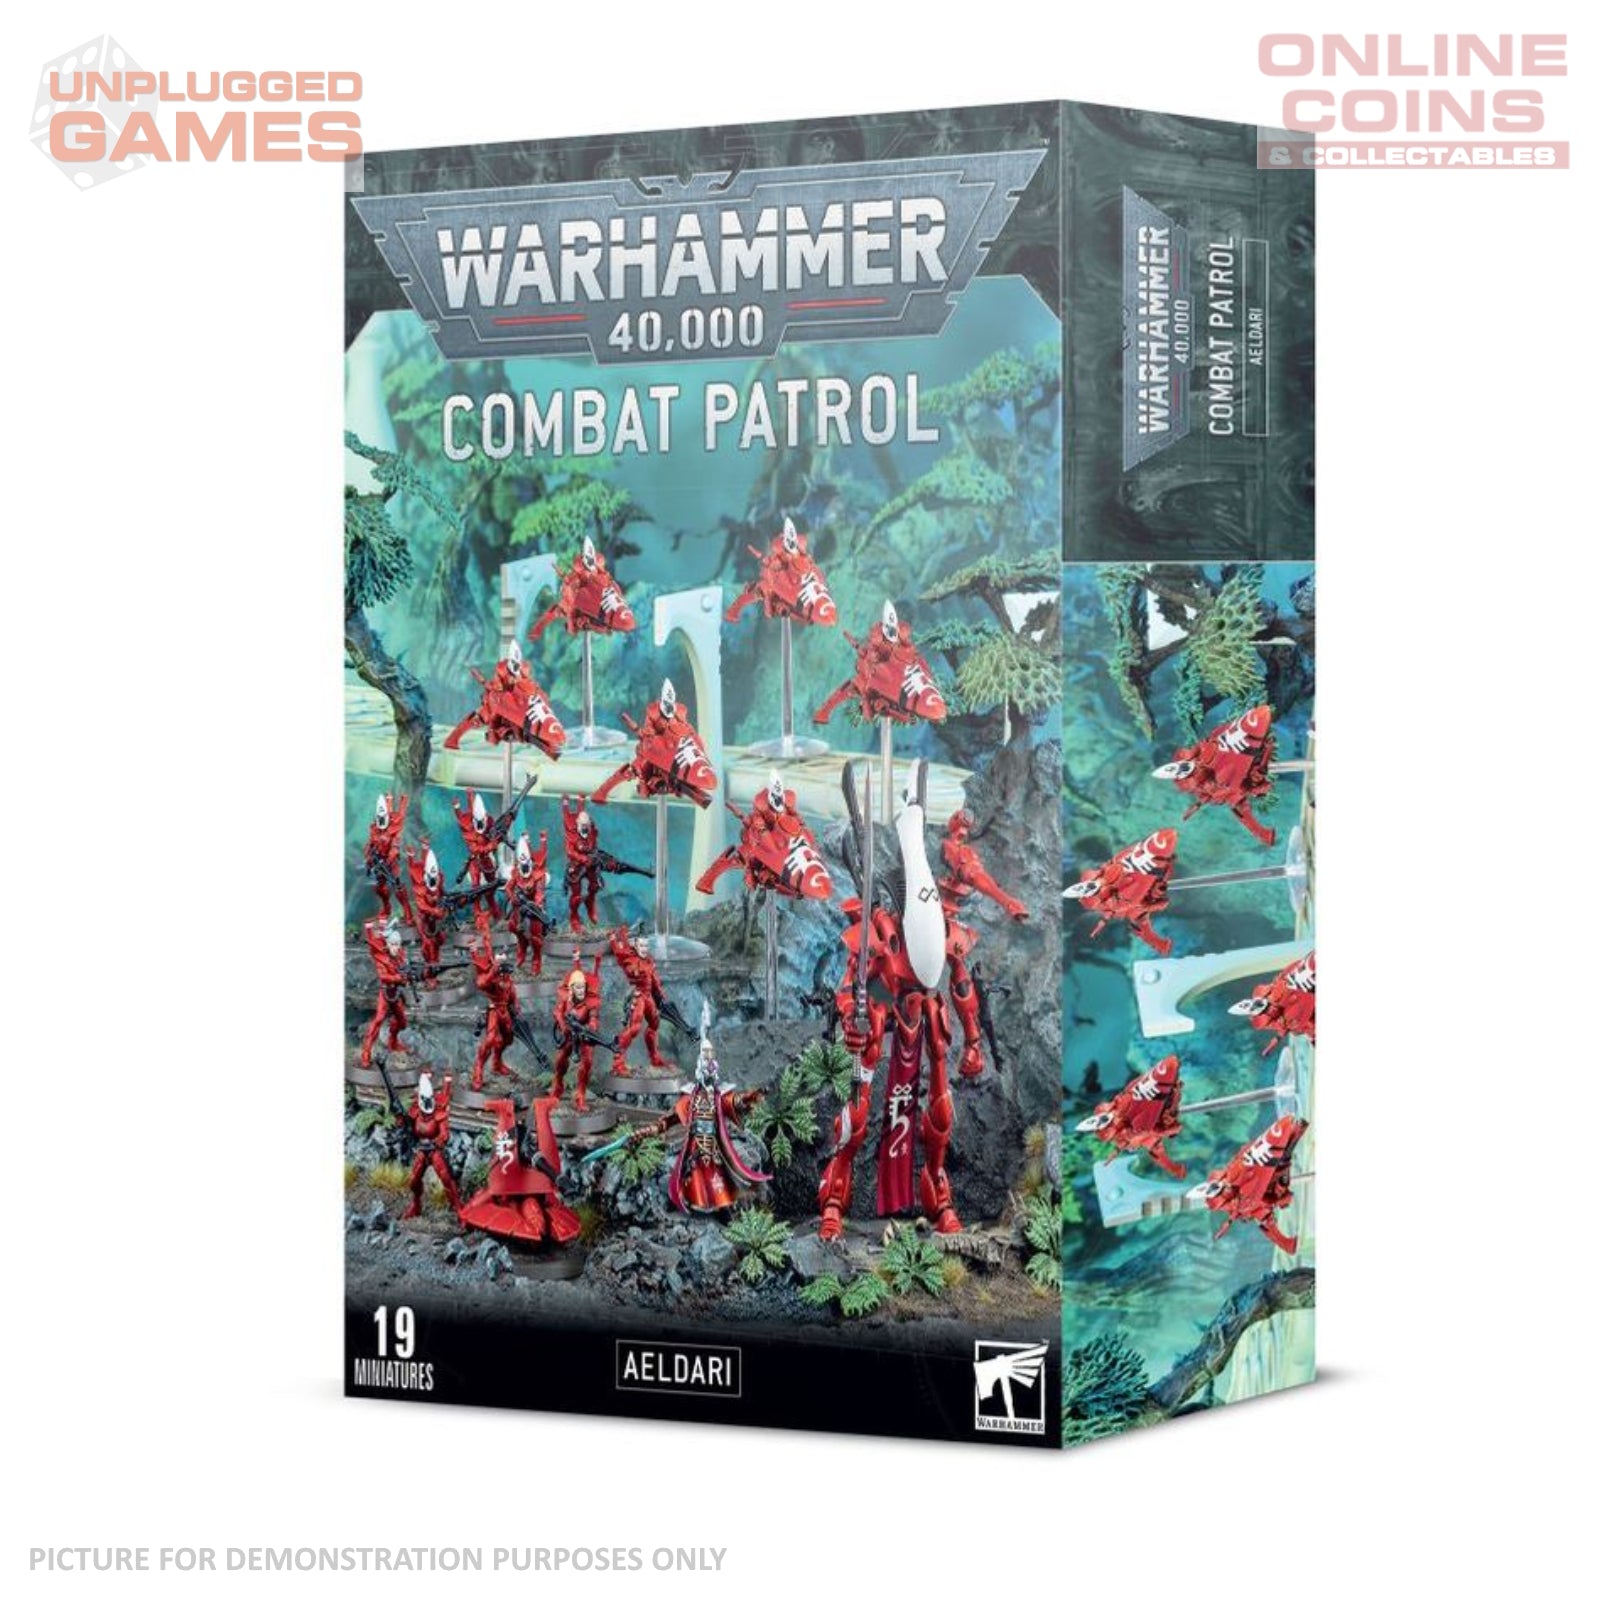 Warhammer 40,000 - Combat Patrol Aeldari